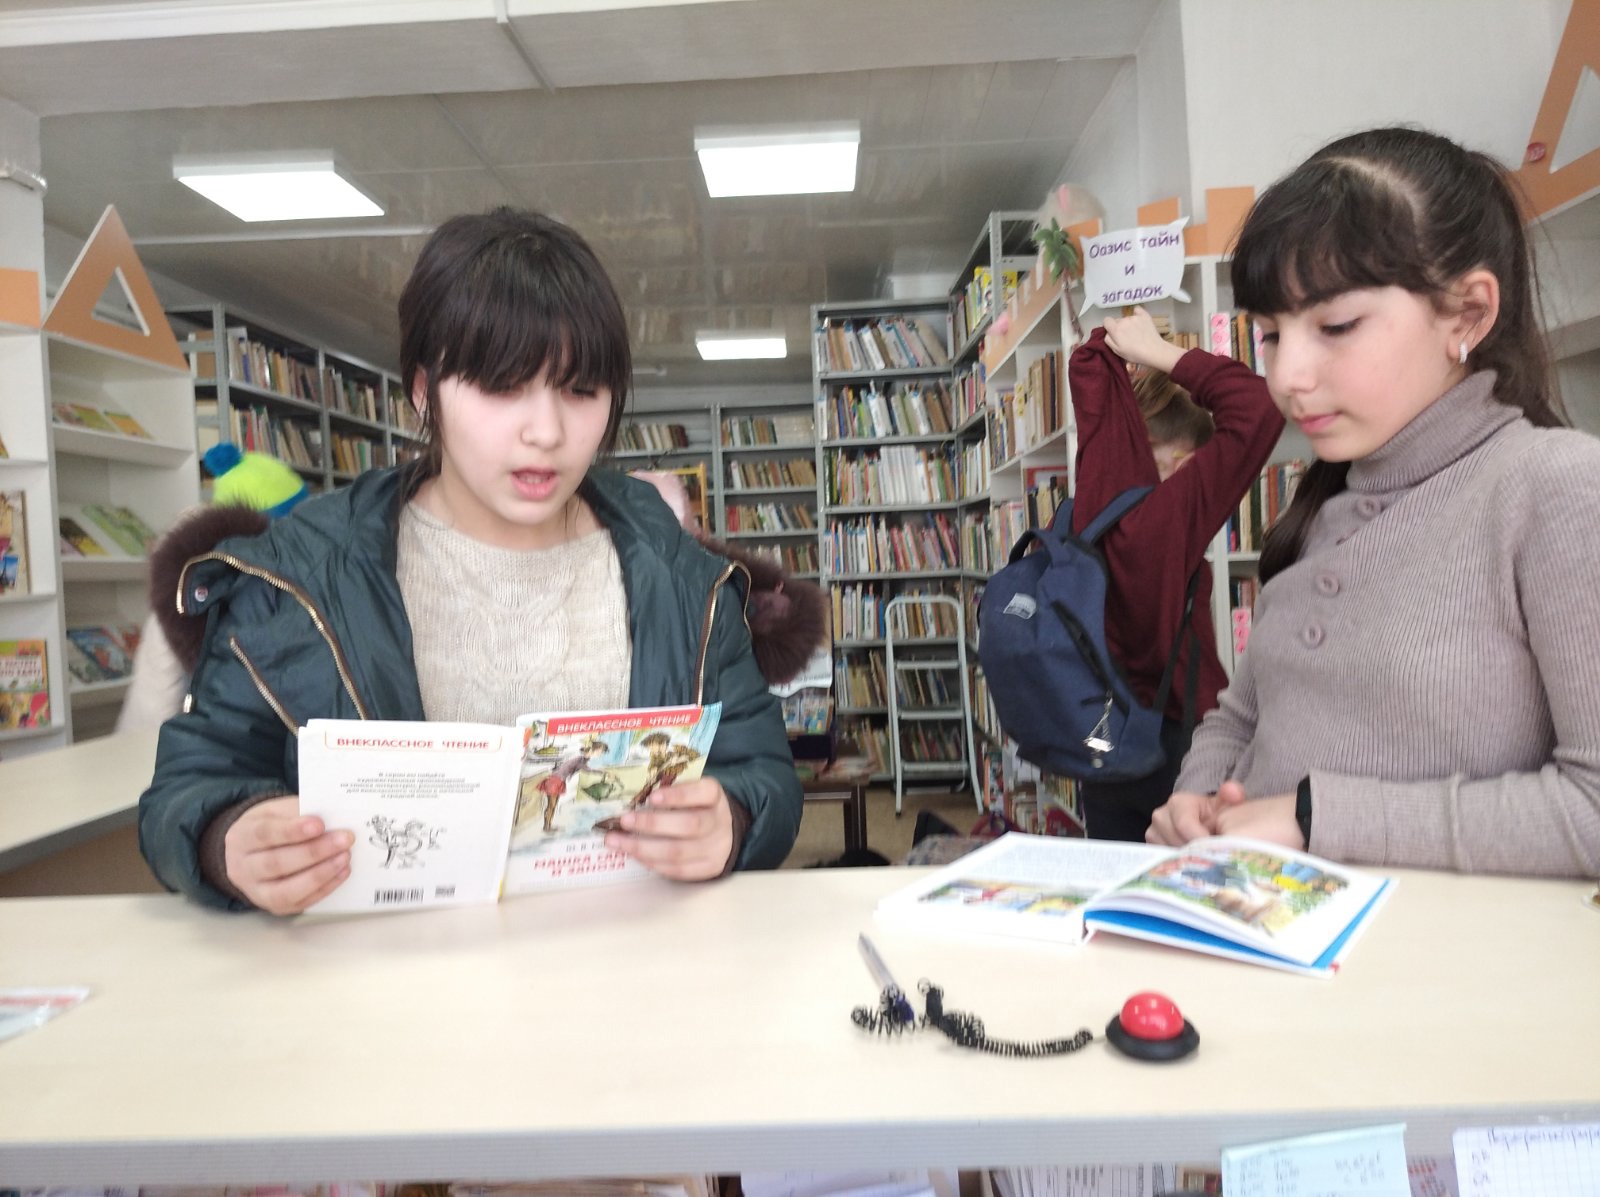 Дети и подростки в библиотеке